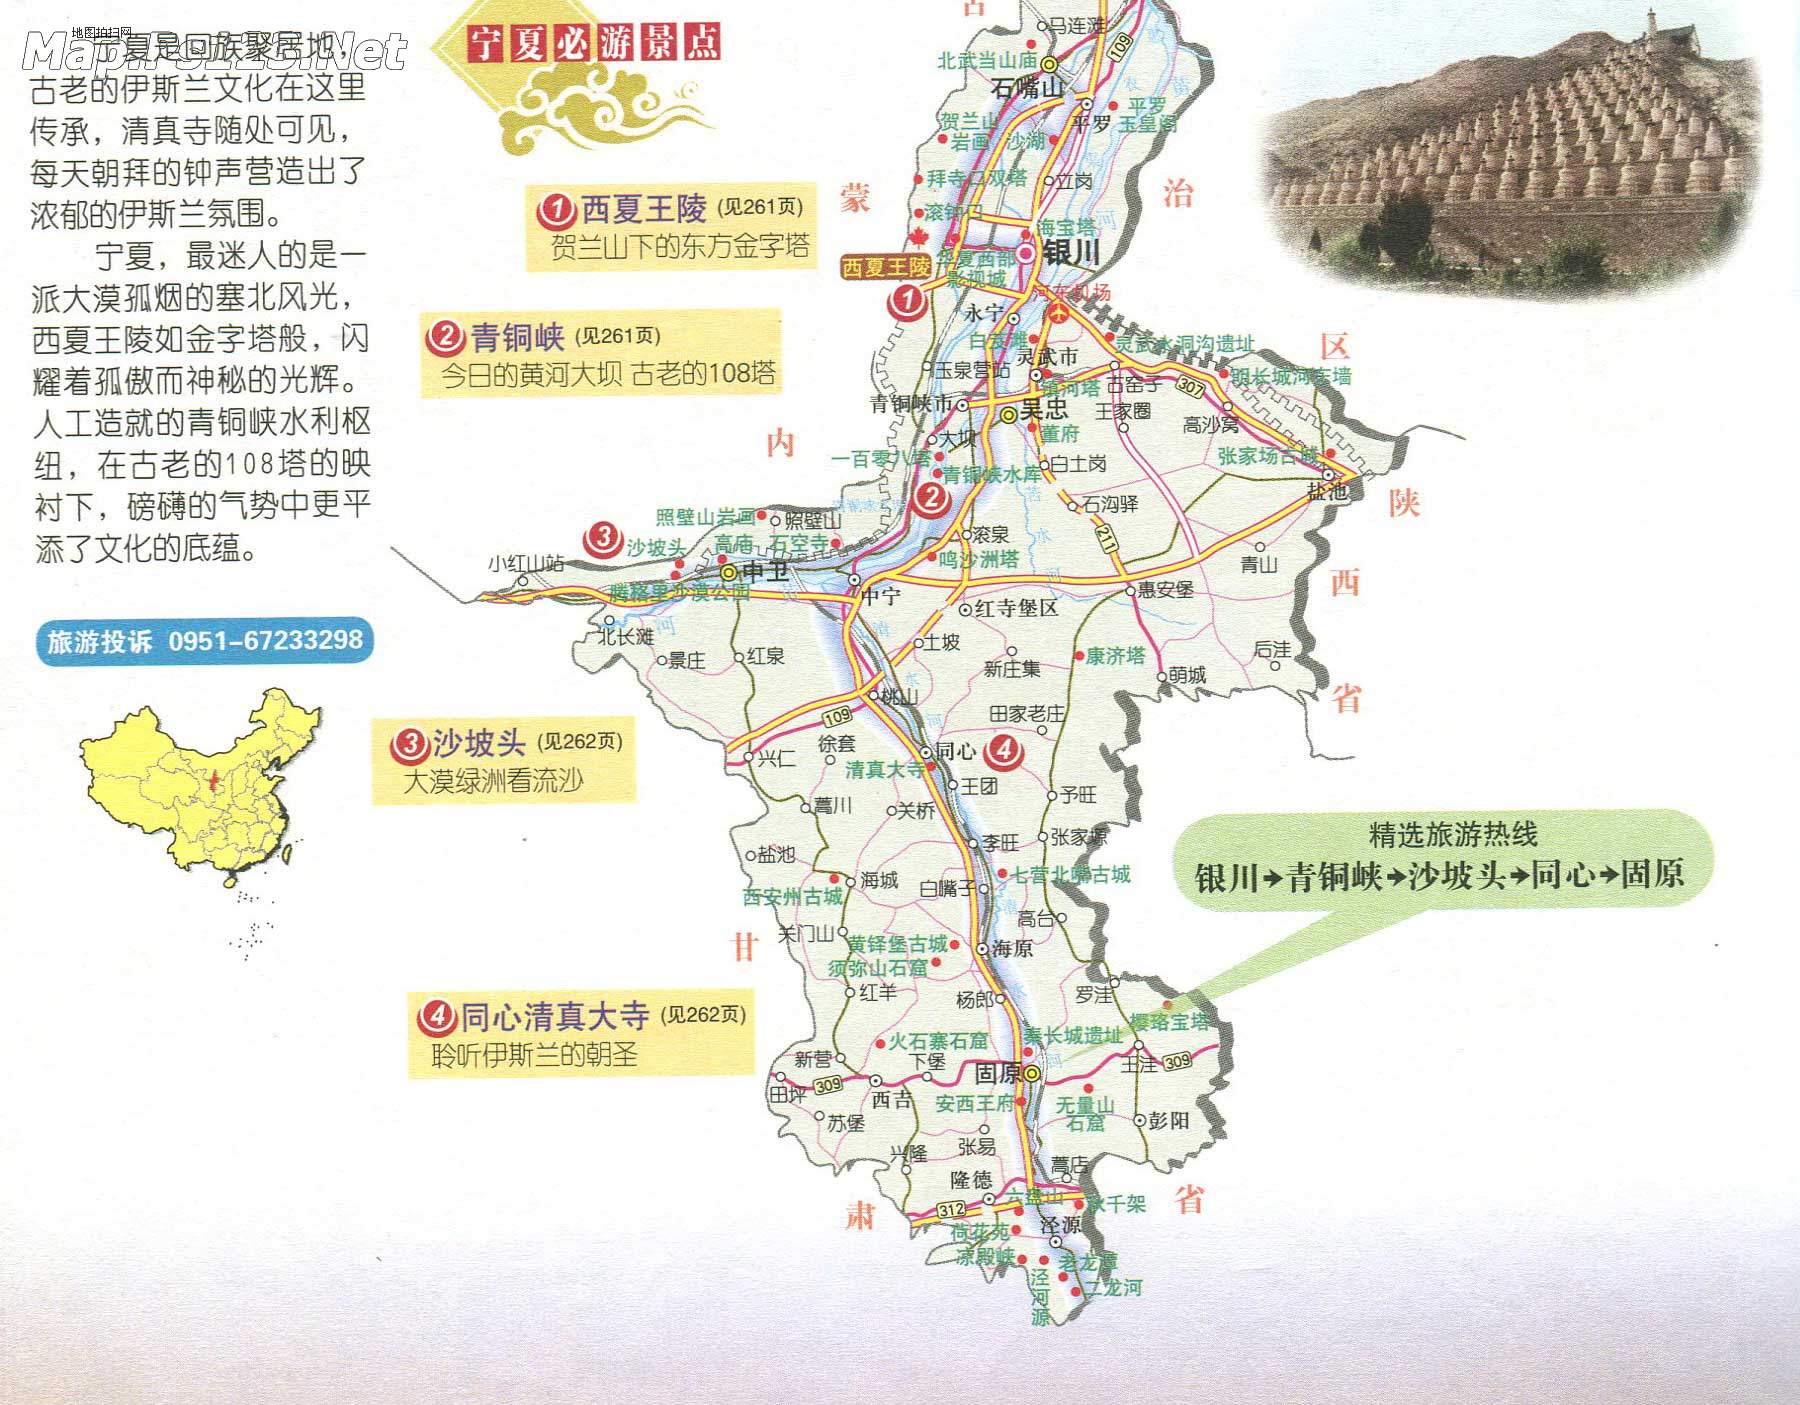 宁夏旅游地图(必游景点)图片